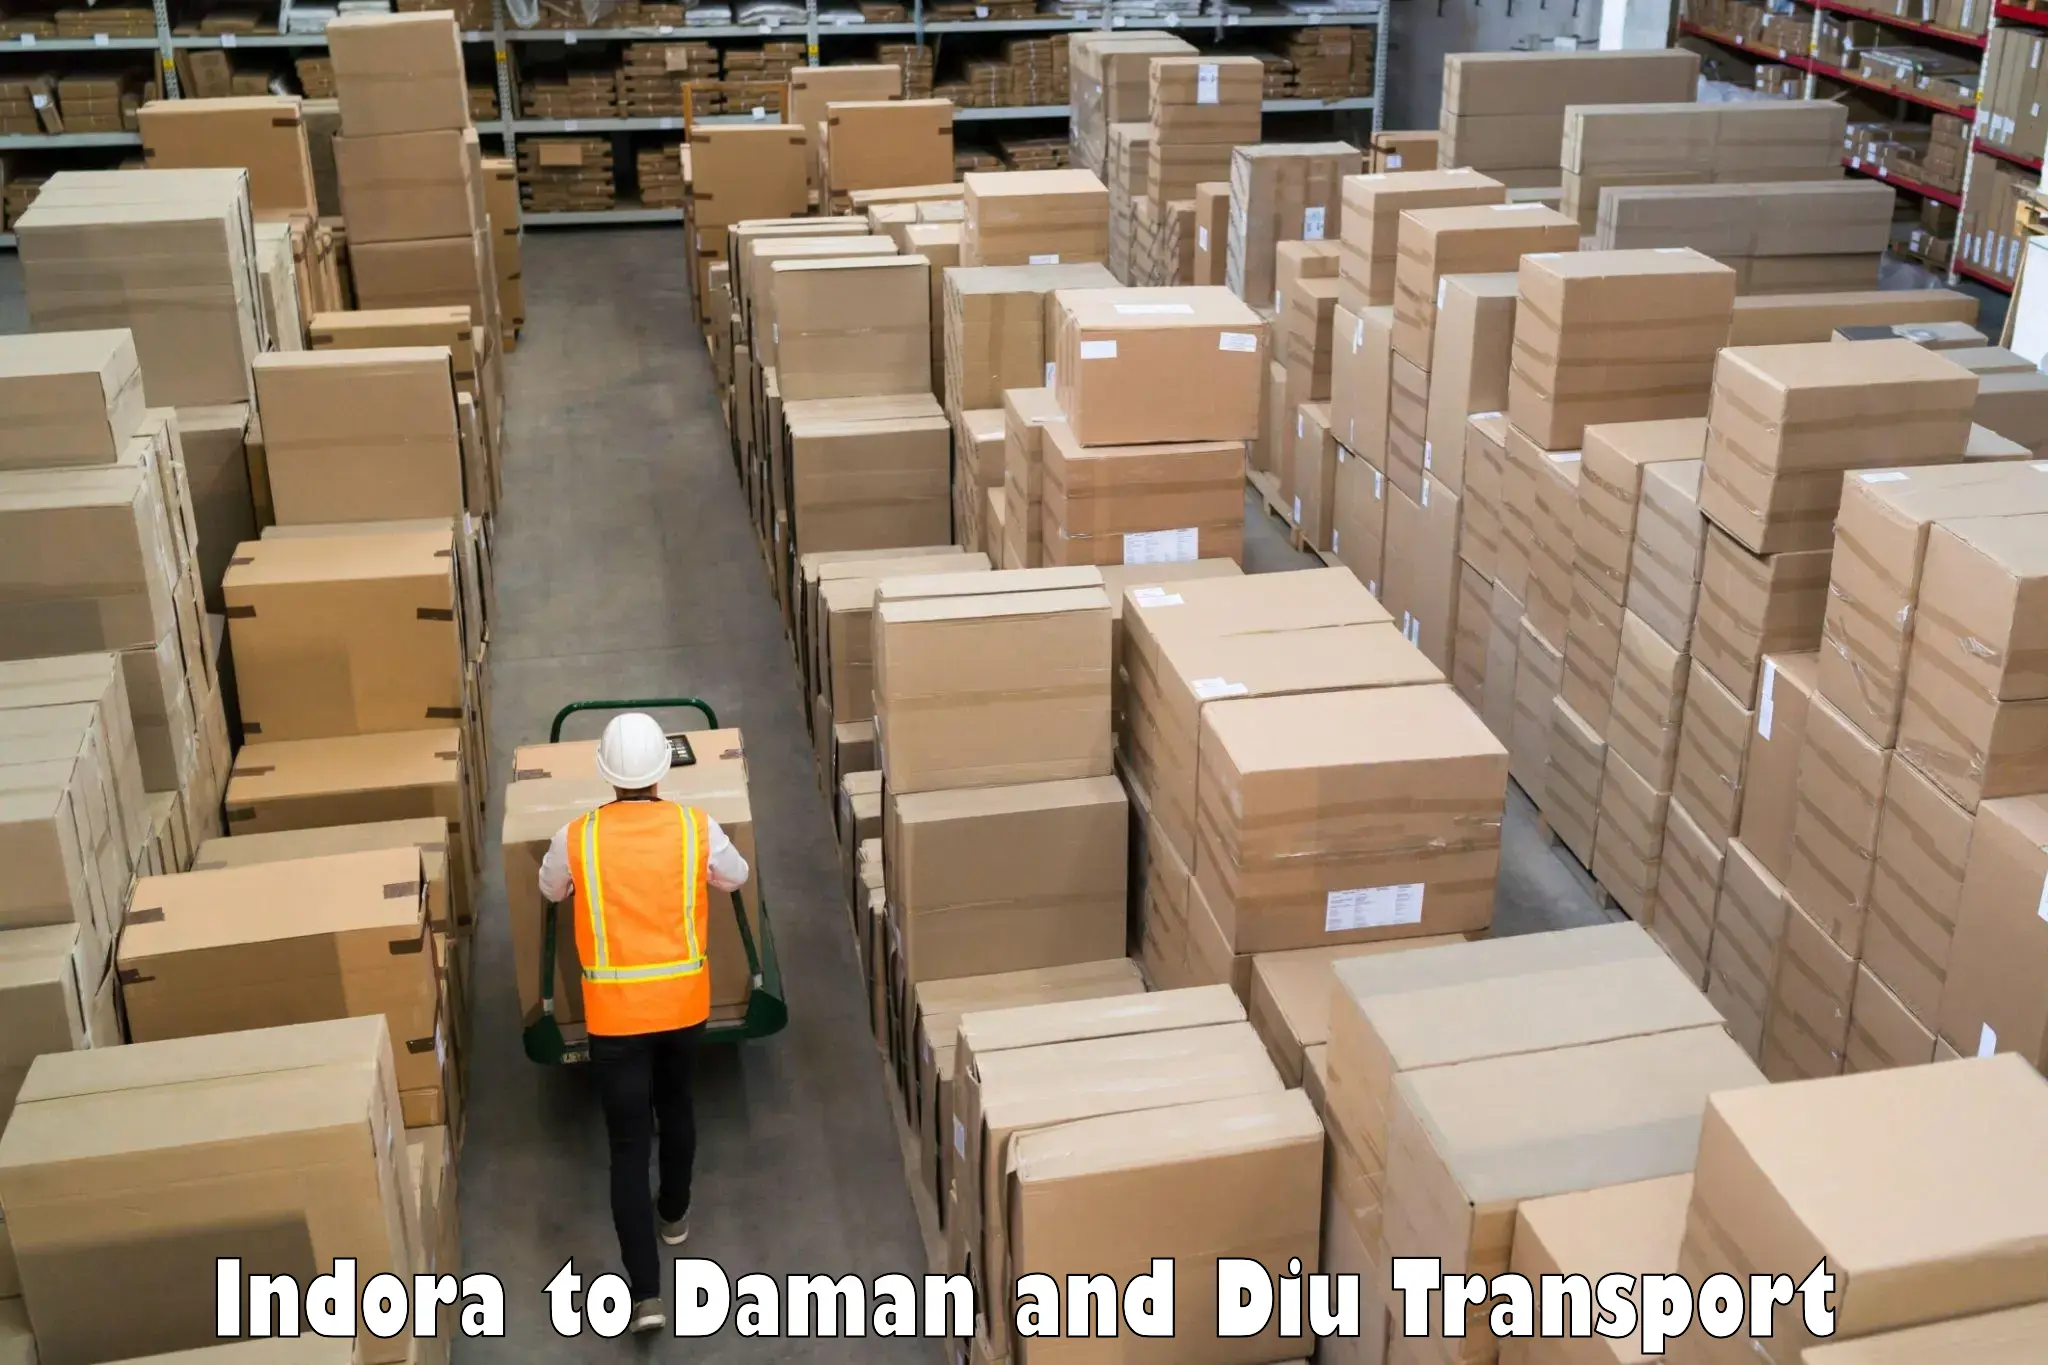 Cargo transport services Indora to Daman and Diu